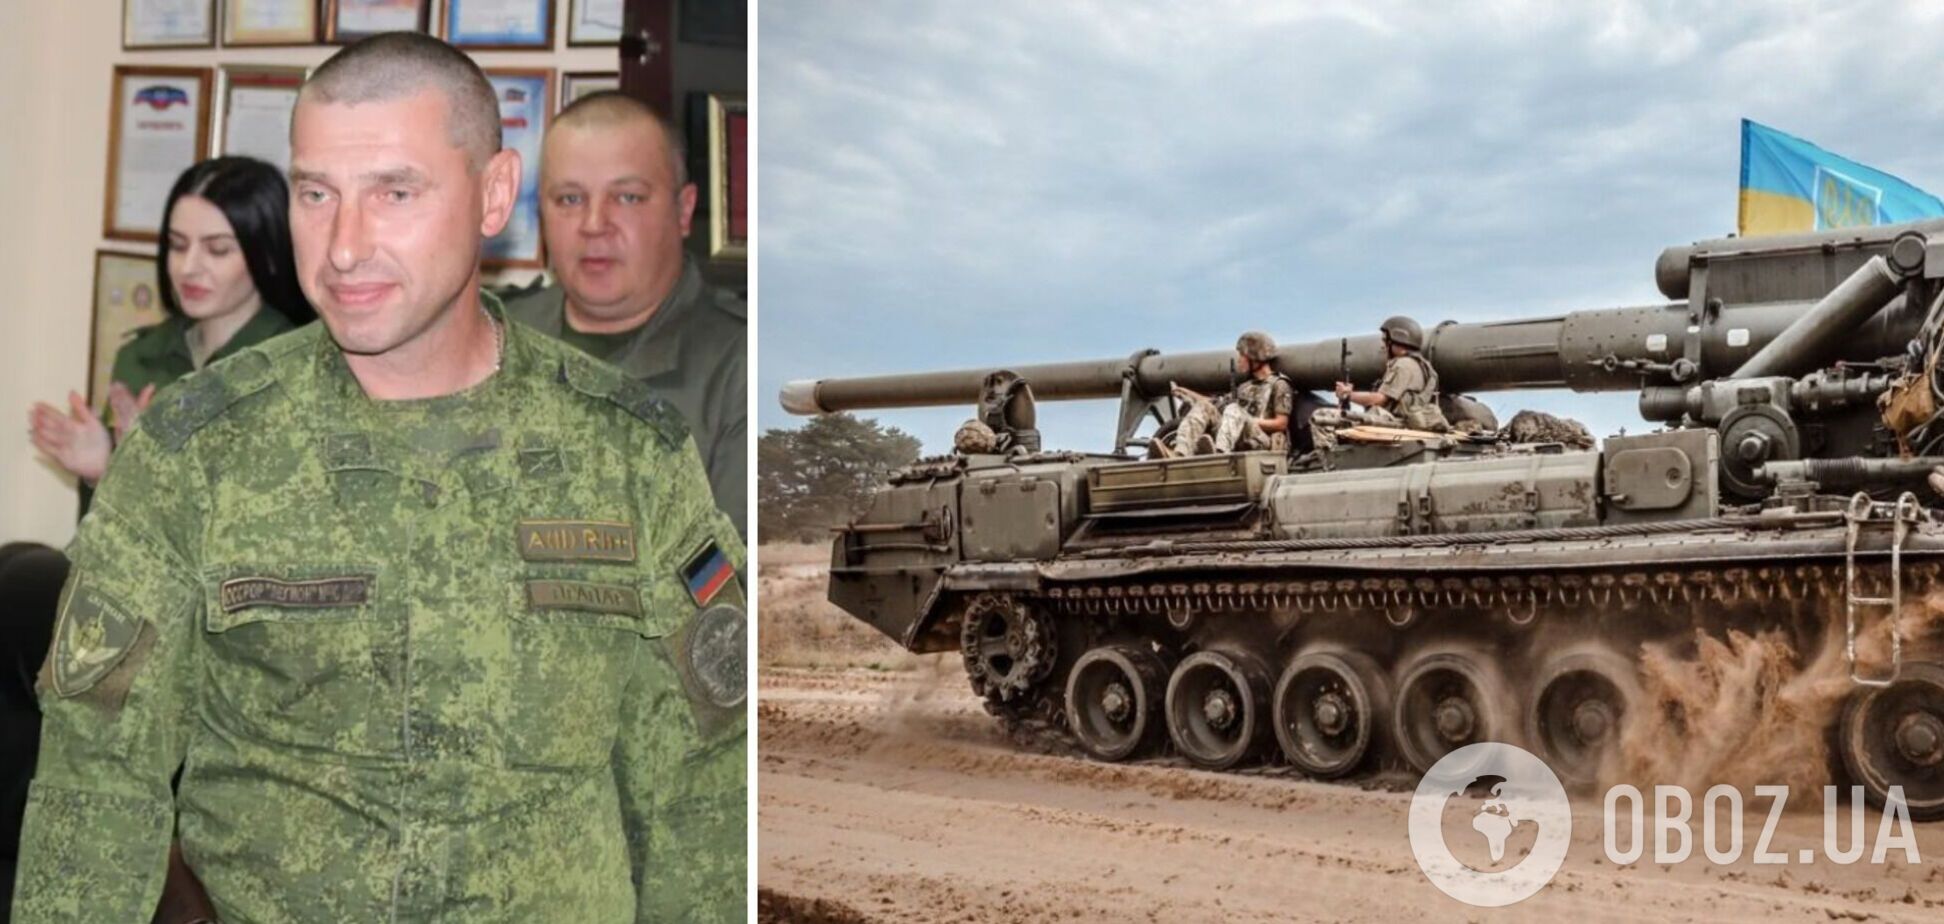 Карма настигла: ликвидирован предатель Украины, который командовал штабом 'армии' 'ДНР'. Фото